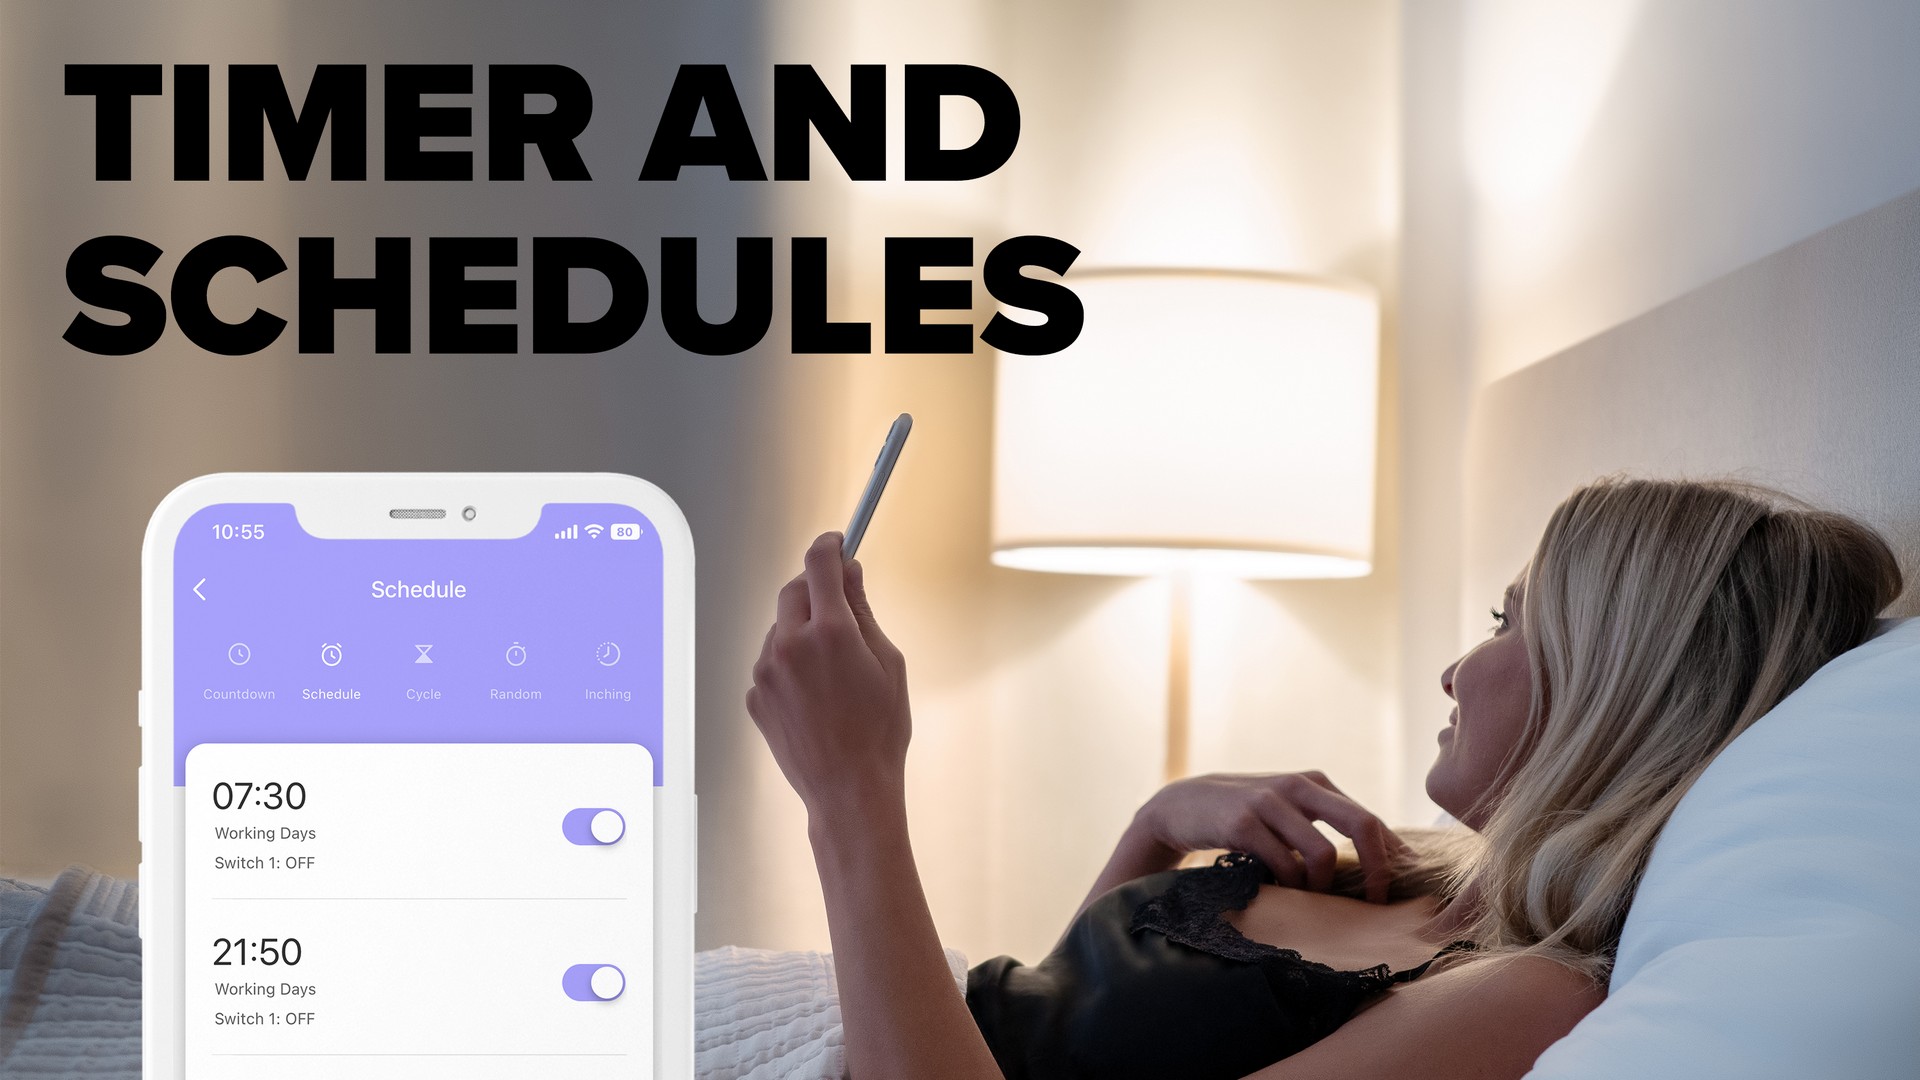 Zásuvka Niceboy ION SmartPlug Pro je vybavena funkcí Časovače pro tvorbu týdenních rozvrhů a plánů s odpočítáváním času, které usnadní provoz vybraných spotřebičů.